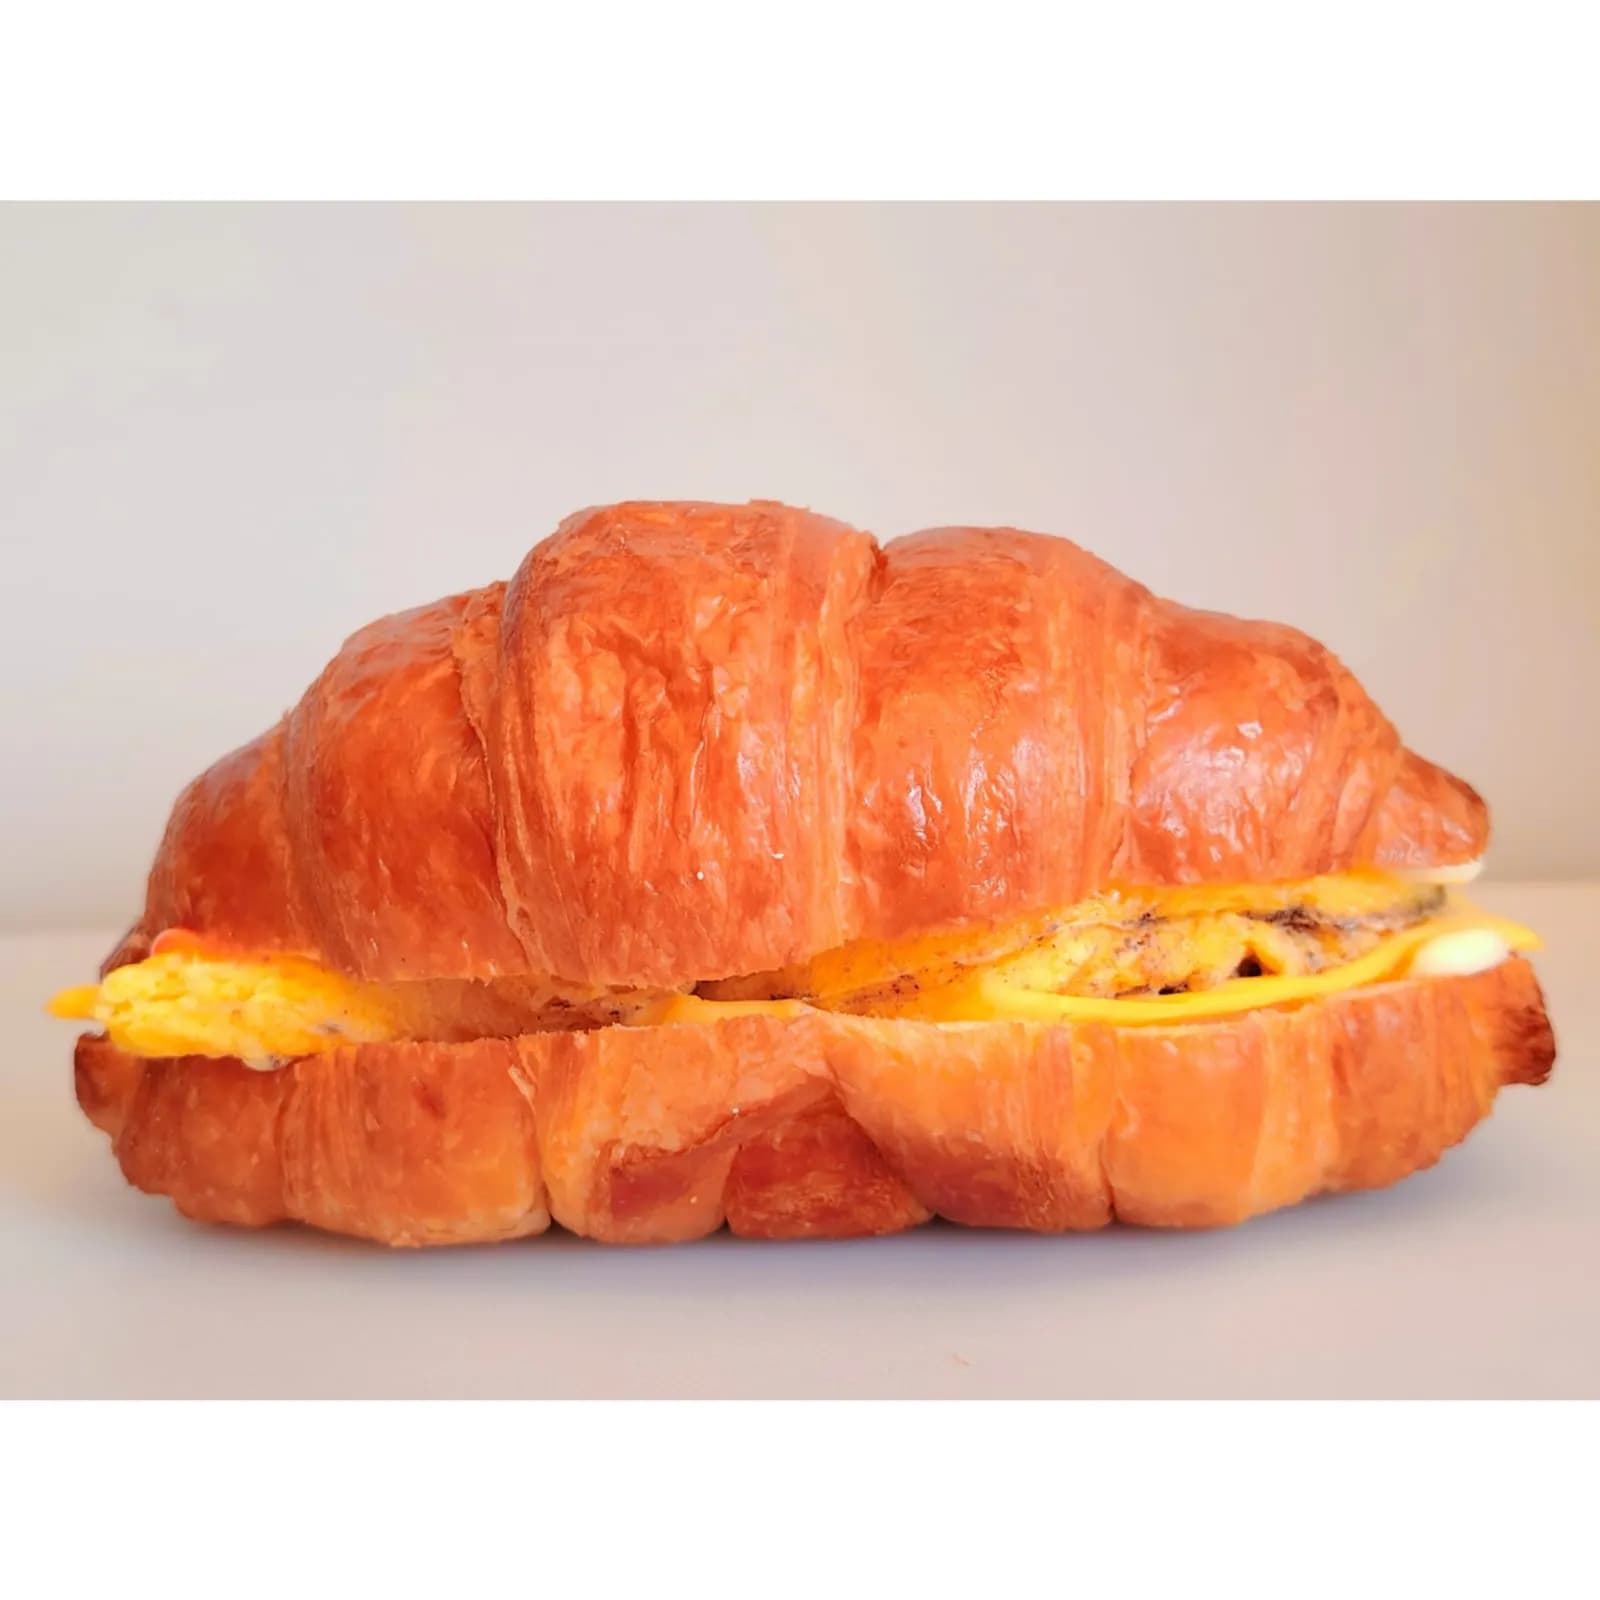 Egg & Croissant Sandwich